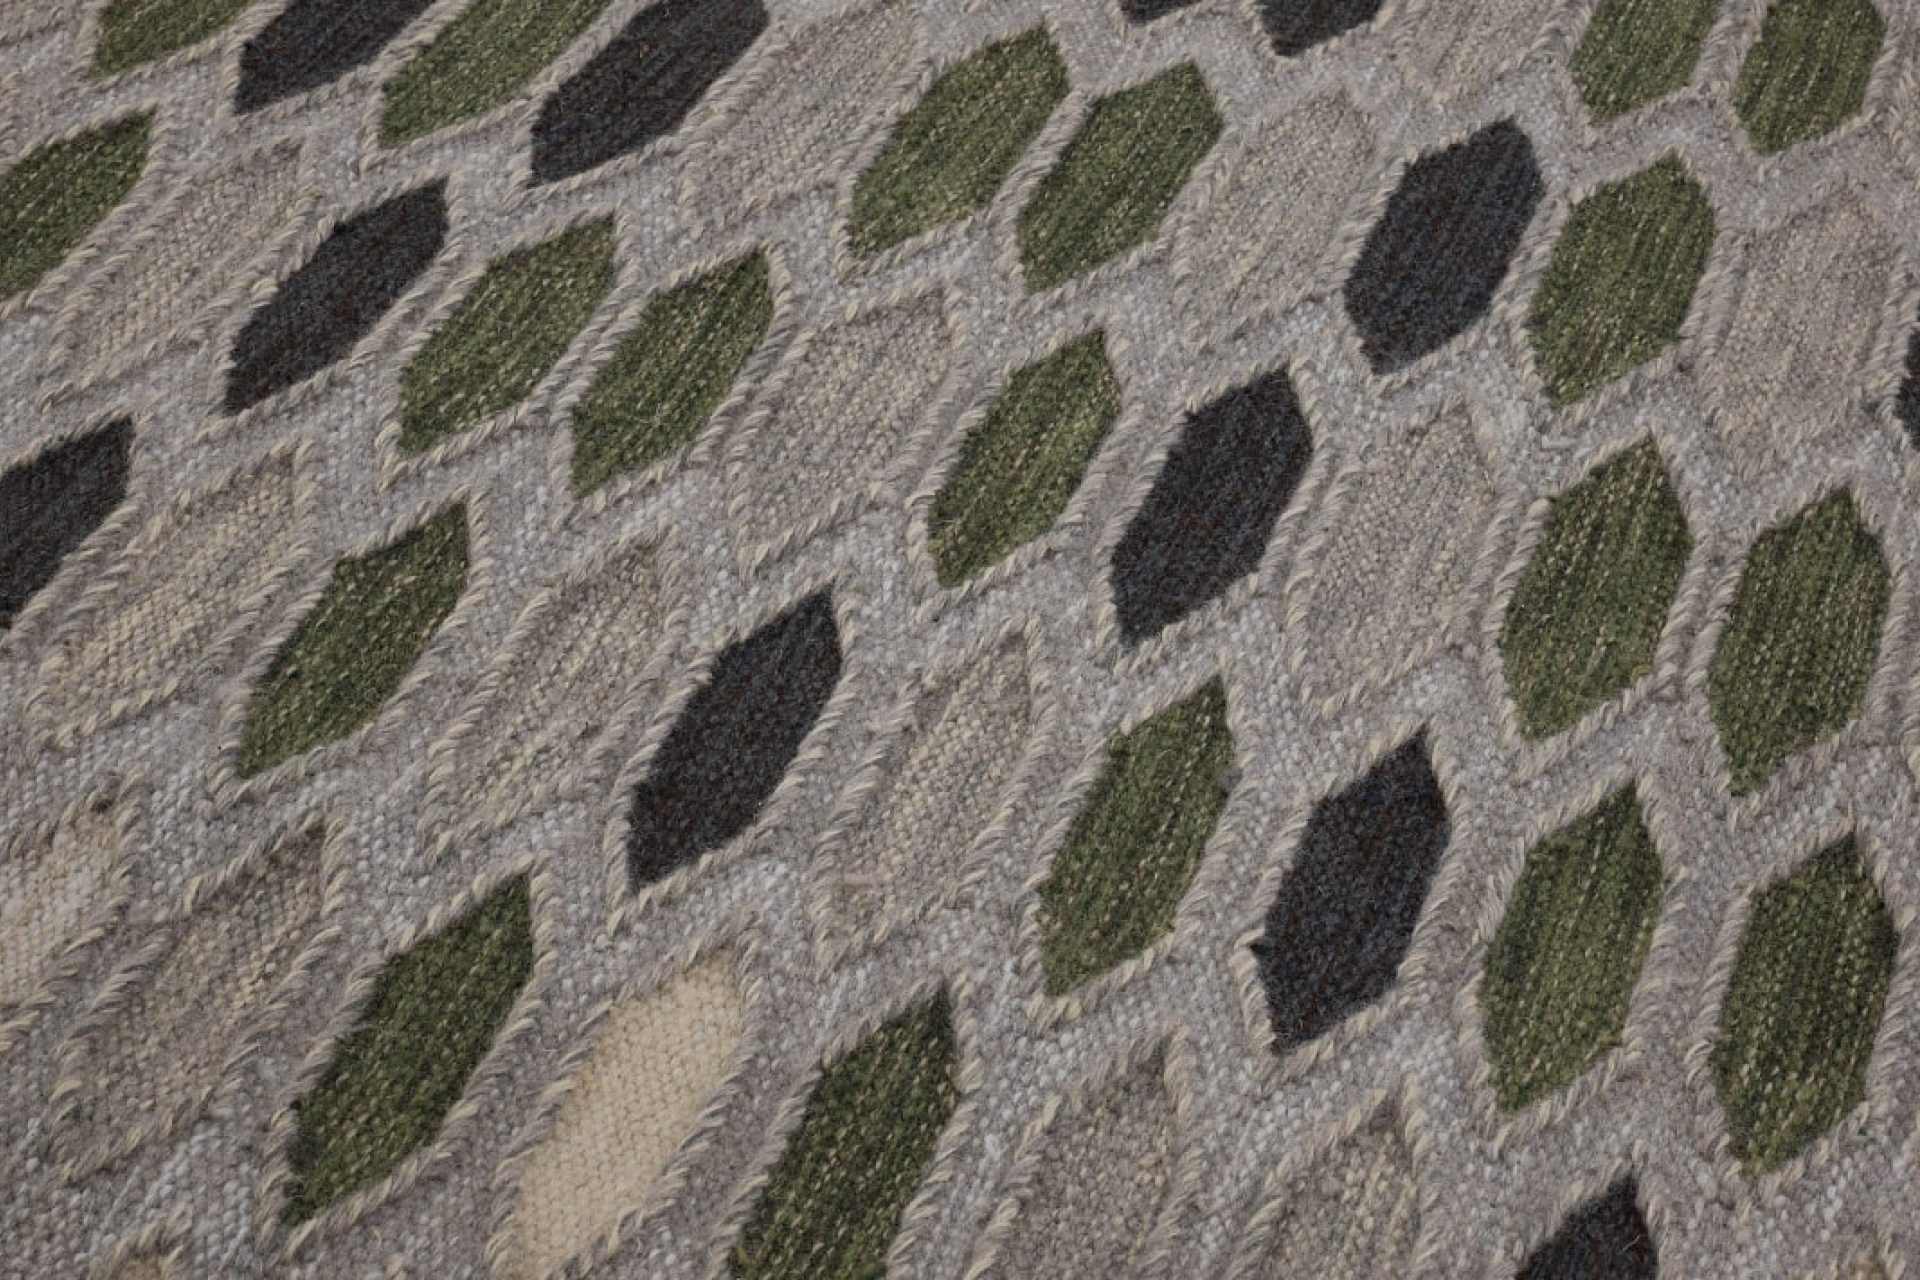 Aperçu d'une partie de tapis design avec des losange dans des tons beige, vert et gris